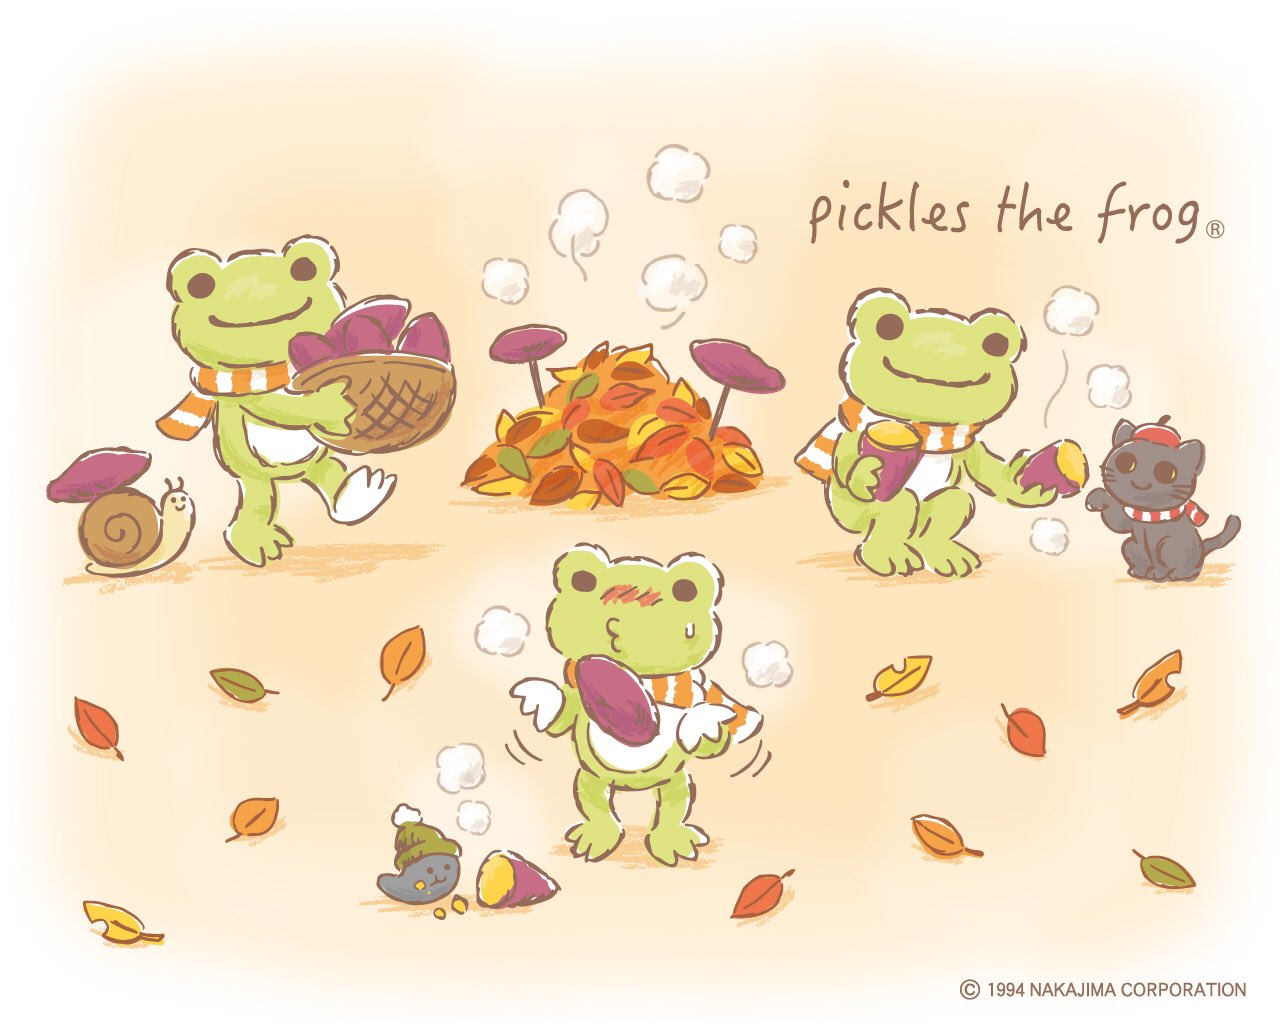 Twitter 上的 Pickles The Frog かえるのピクルス Hpダウンロード更新しました かえるのピクルス Picklesthefrog 萌蛙匹克 焼き芋 ピクルス壁紙 11月の壁紙は焼き芋を楽しむピクルスたちです あつあつ フーフー みんなで食べるとより一層おいしいです